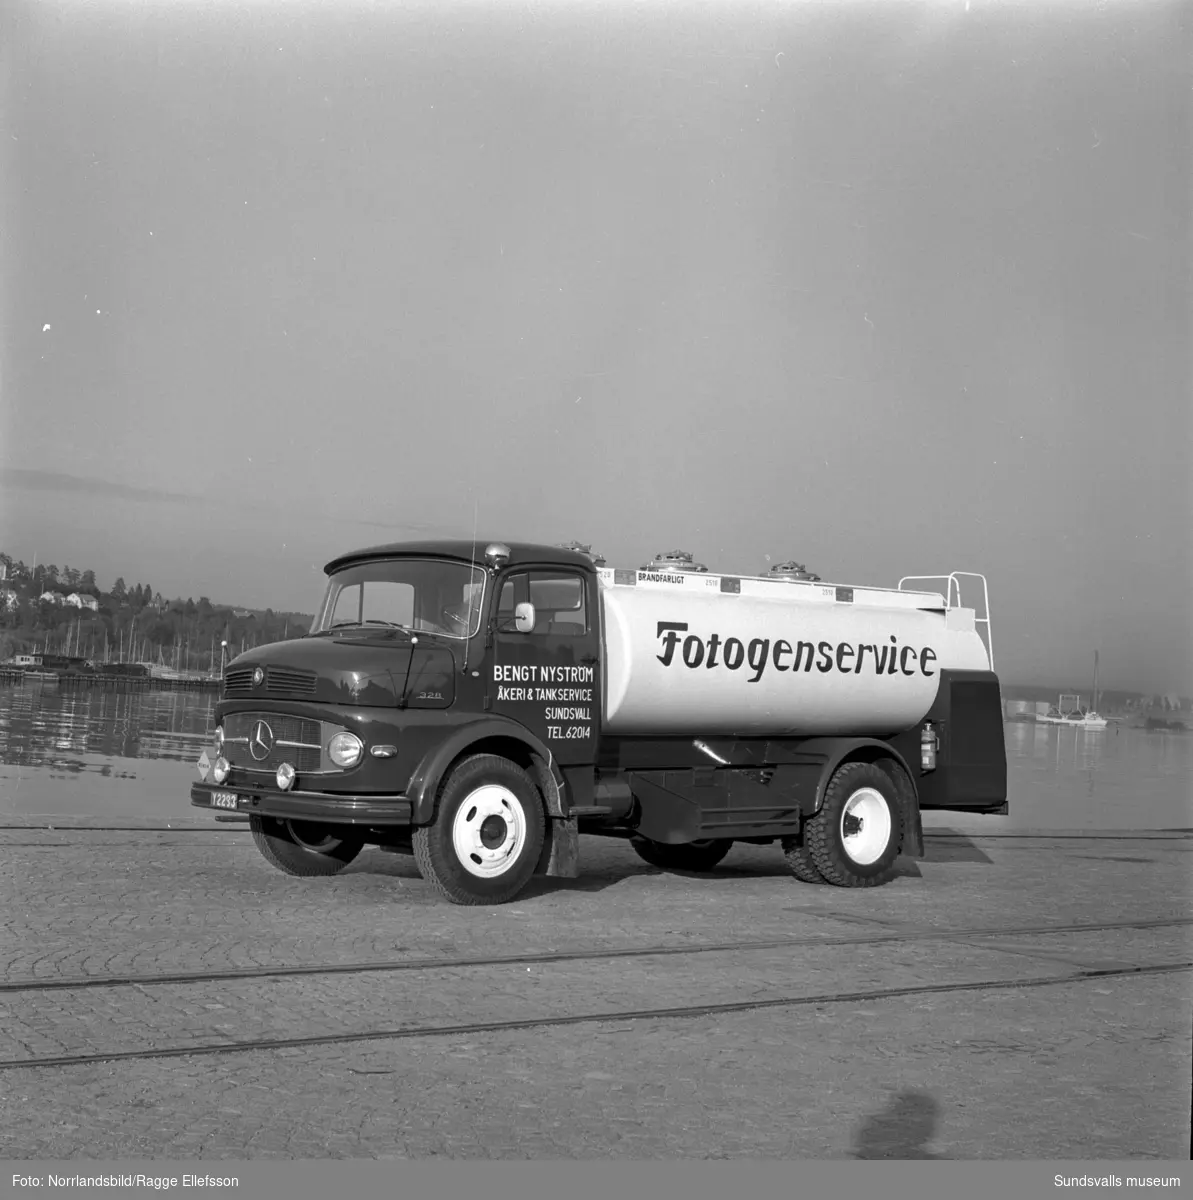 Ny Mercedes 328 tankbil med texten Fotogenservice levererad av Philipssons bilfirma till Bengt Nyström Åkeri & Tankservice. Fotot taget i hamnen.